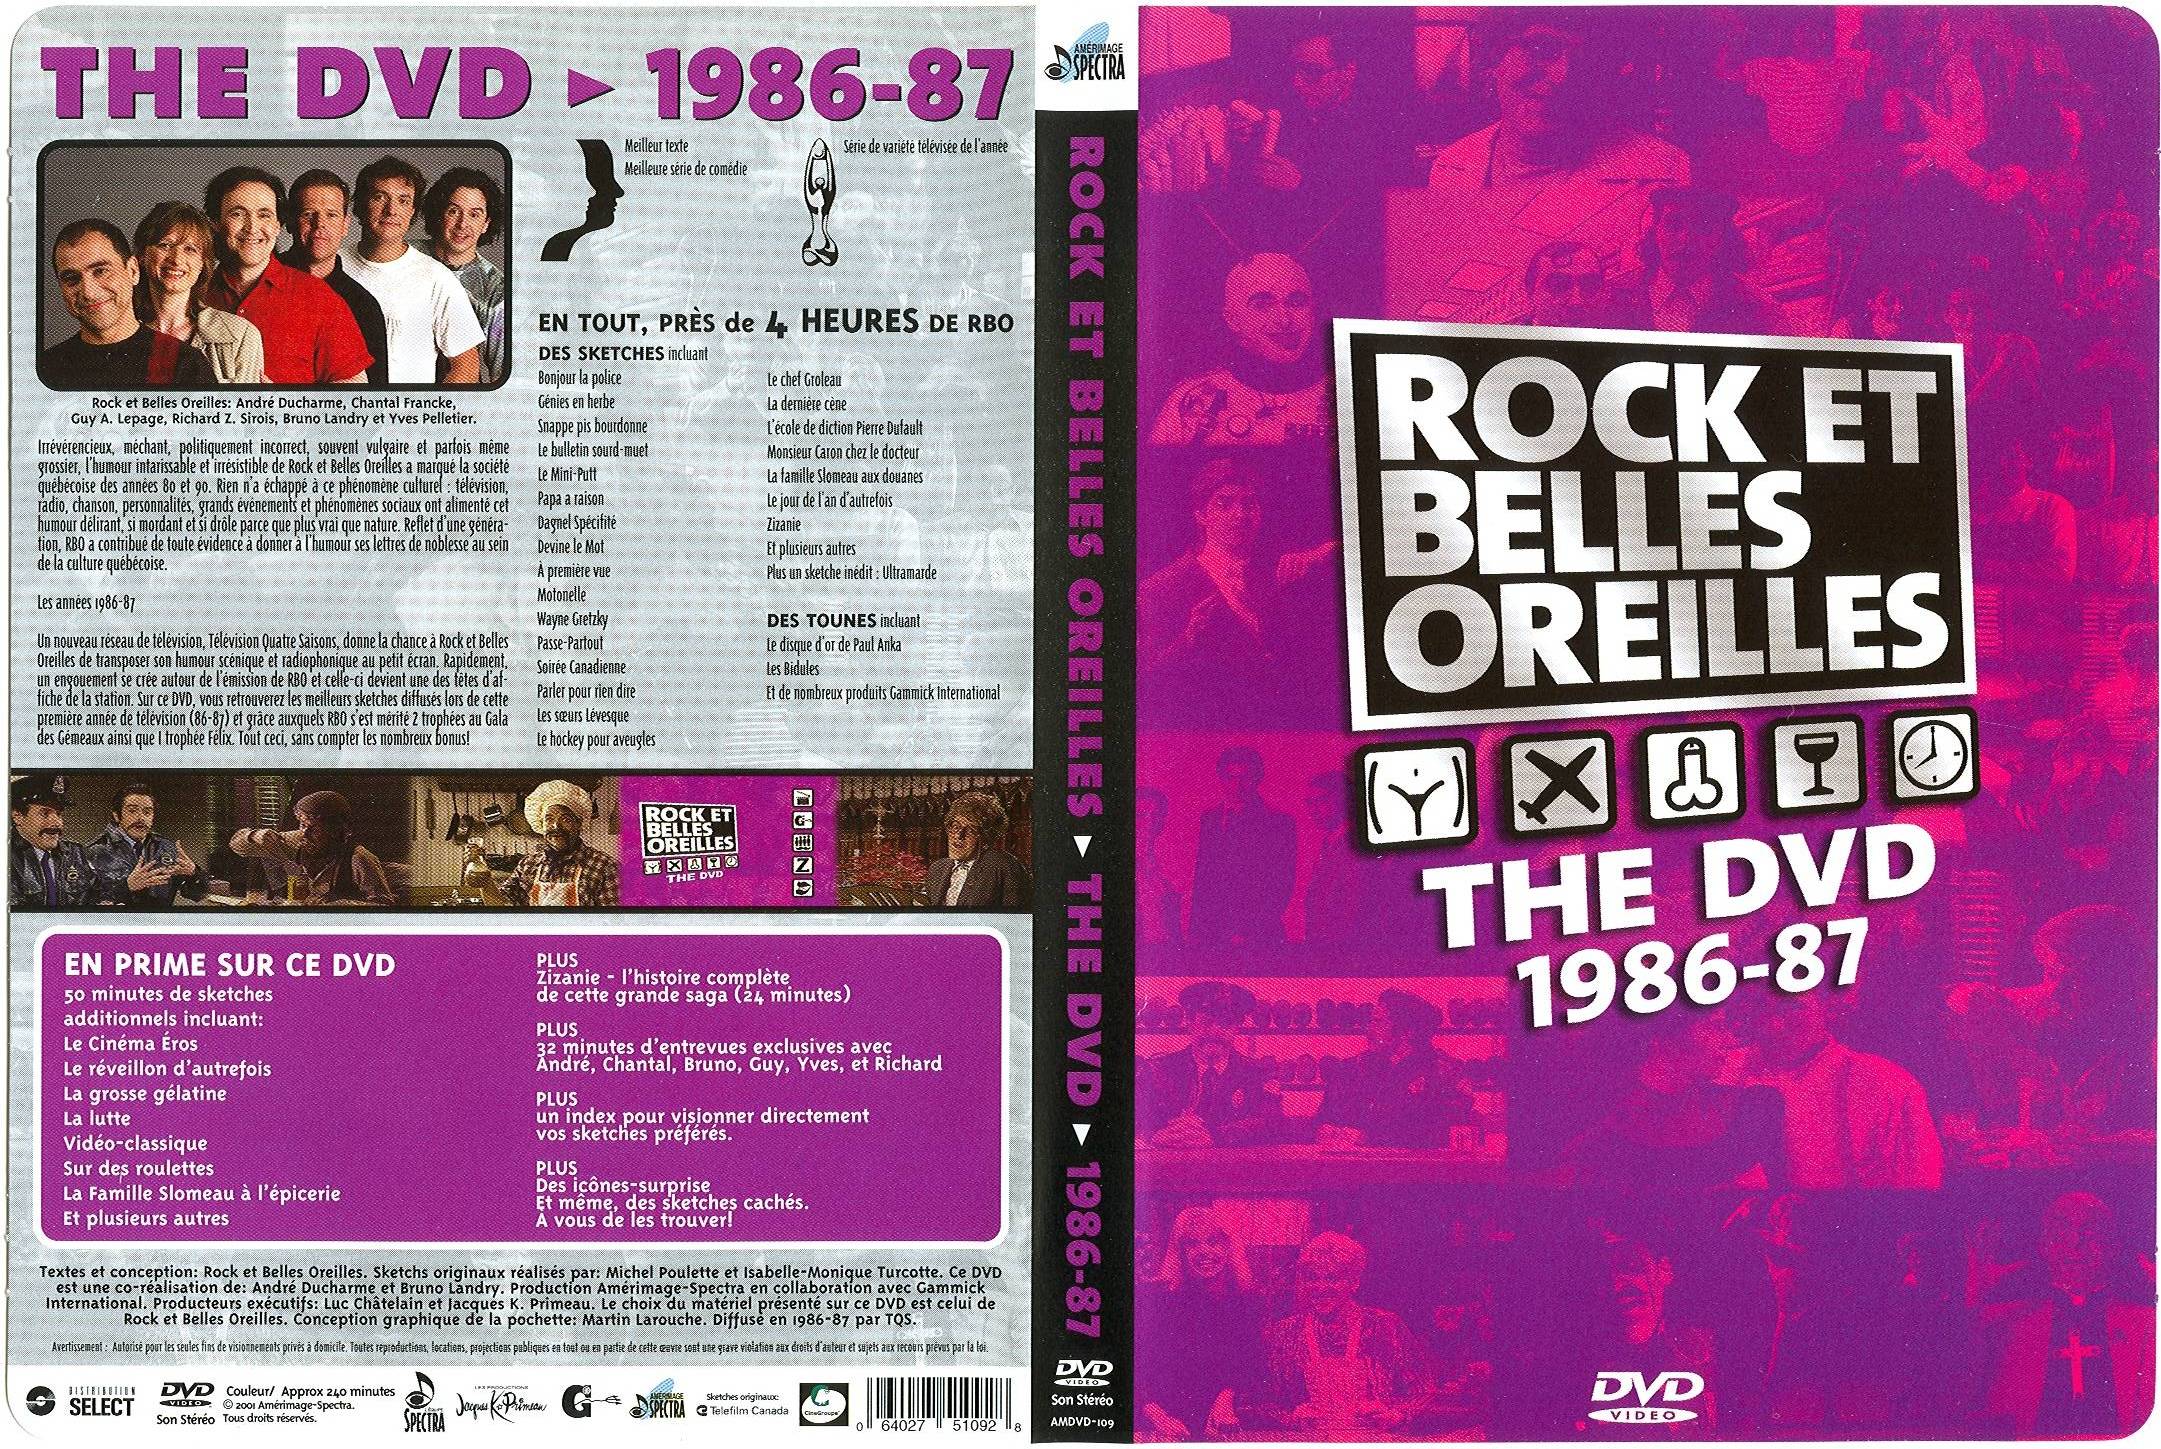 Jaquette DVD Rock et belles oreilles 1986-87